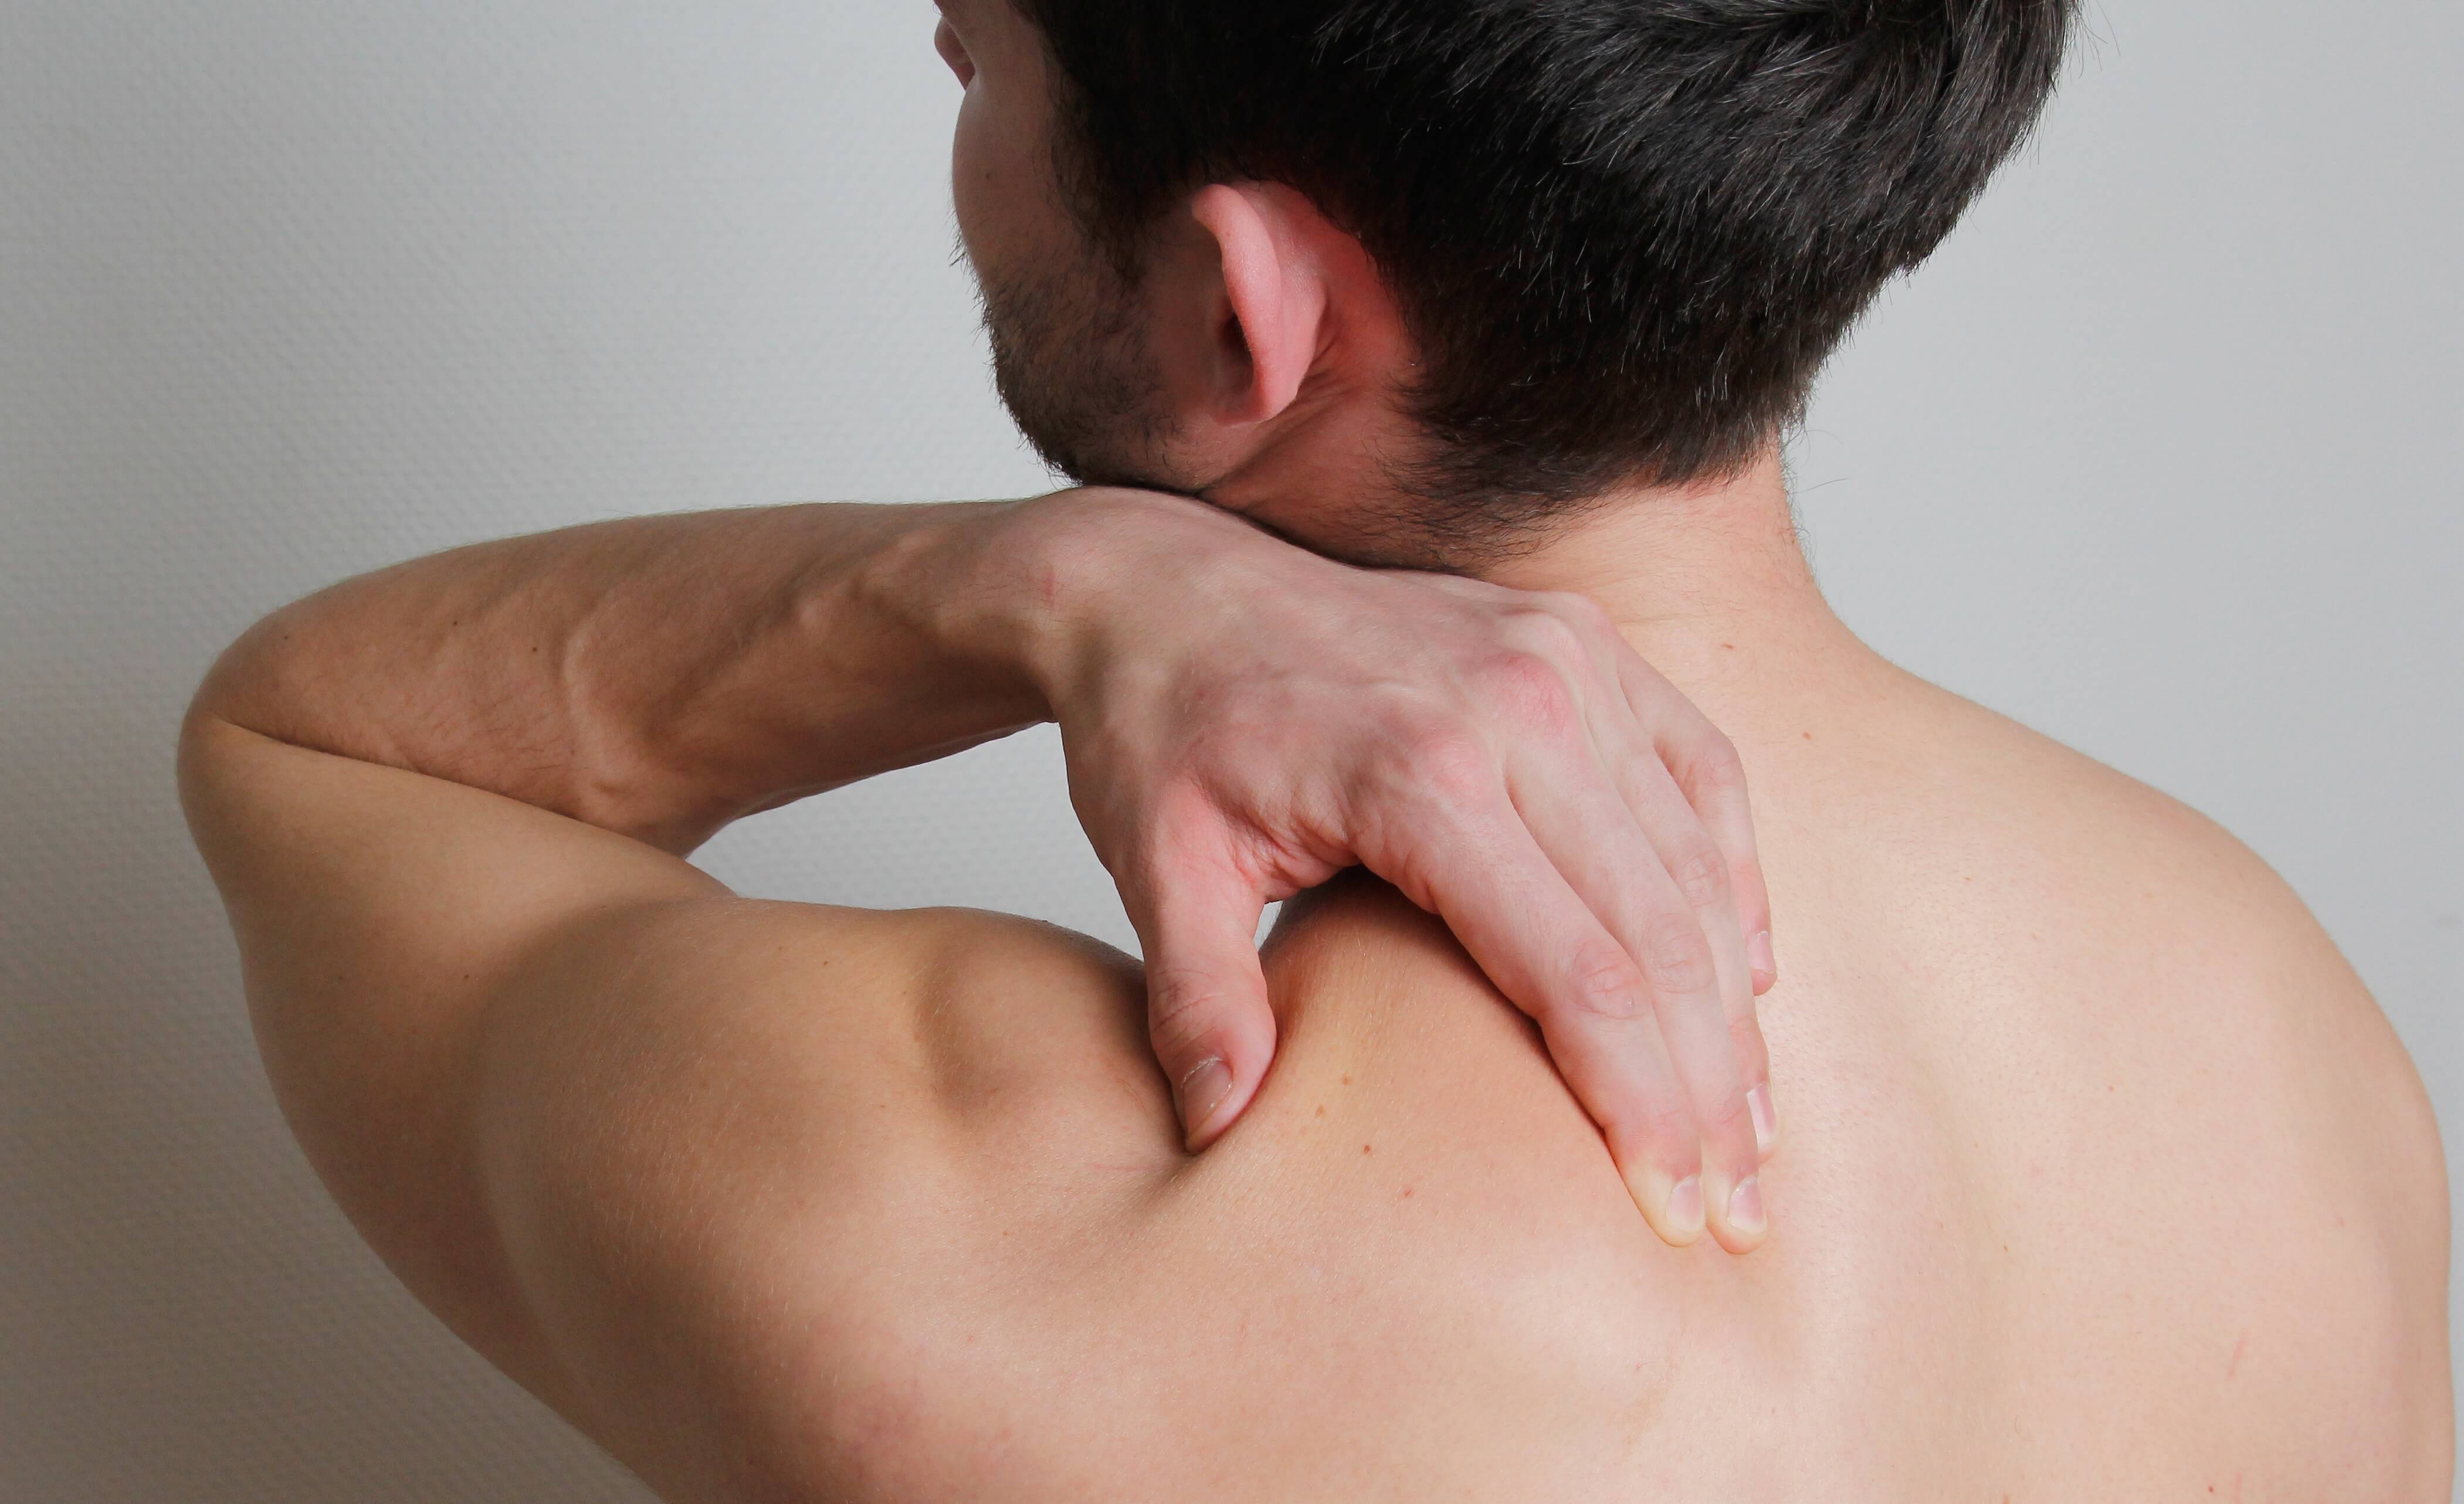 Evolve Højde Bering strædet Ondt i skulderen? | Få behandling for skuldersmerter | Prøv 4 test i Videoen